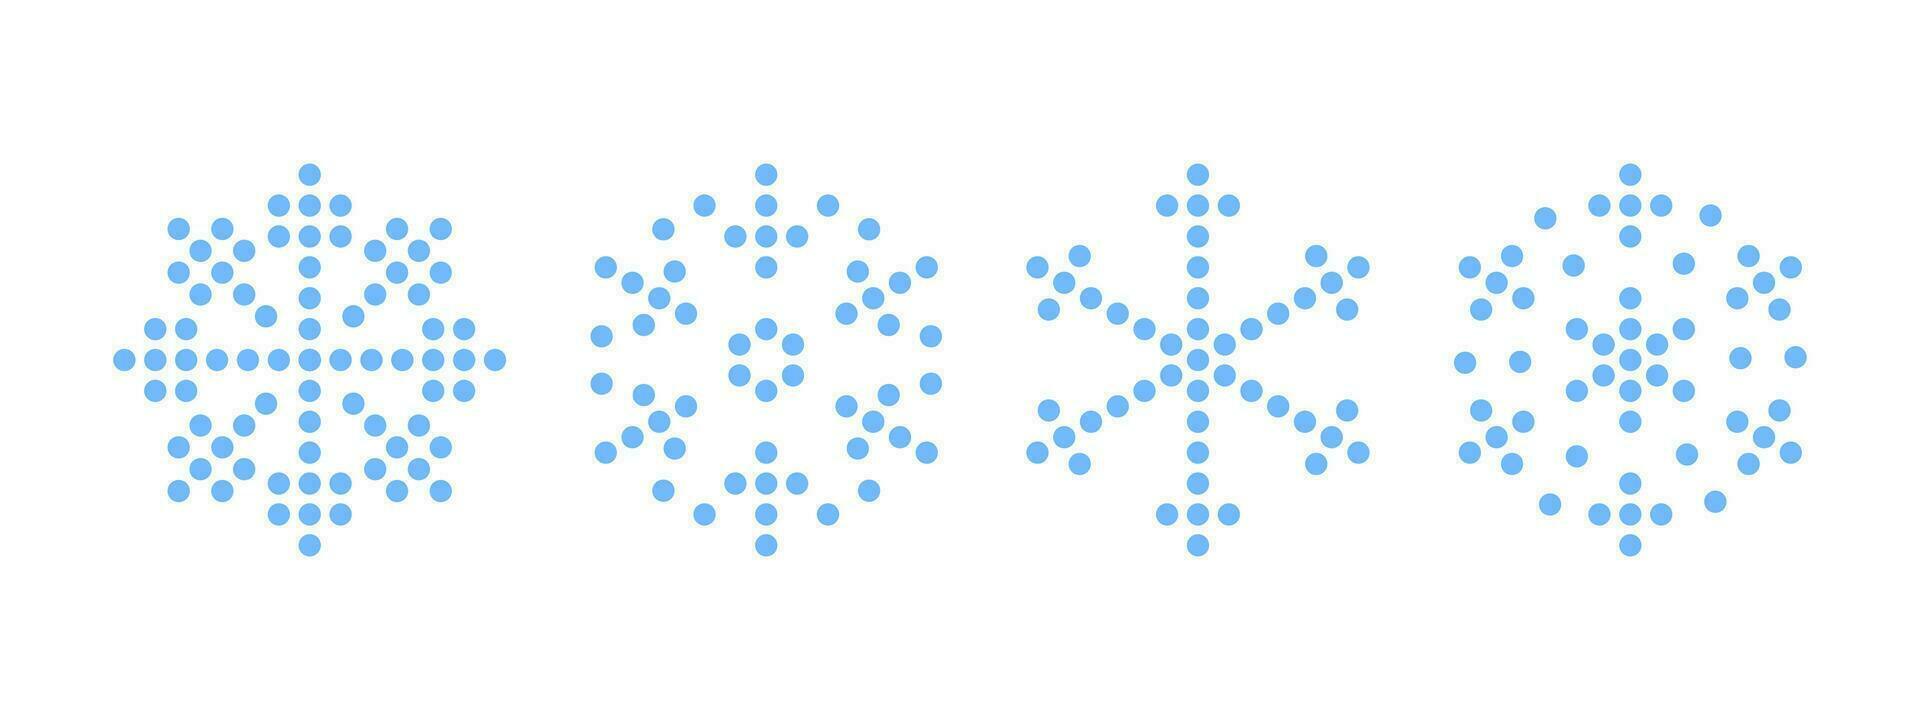 flocons de neige. pixel style flocons de neige. flocon de neige différent Icônes. vecteur évolutif graphique